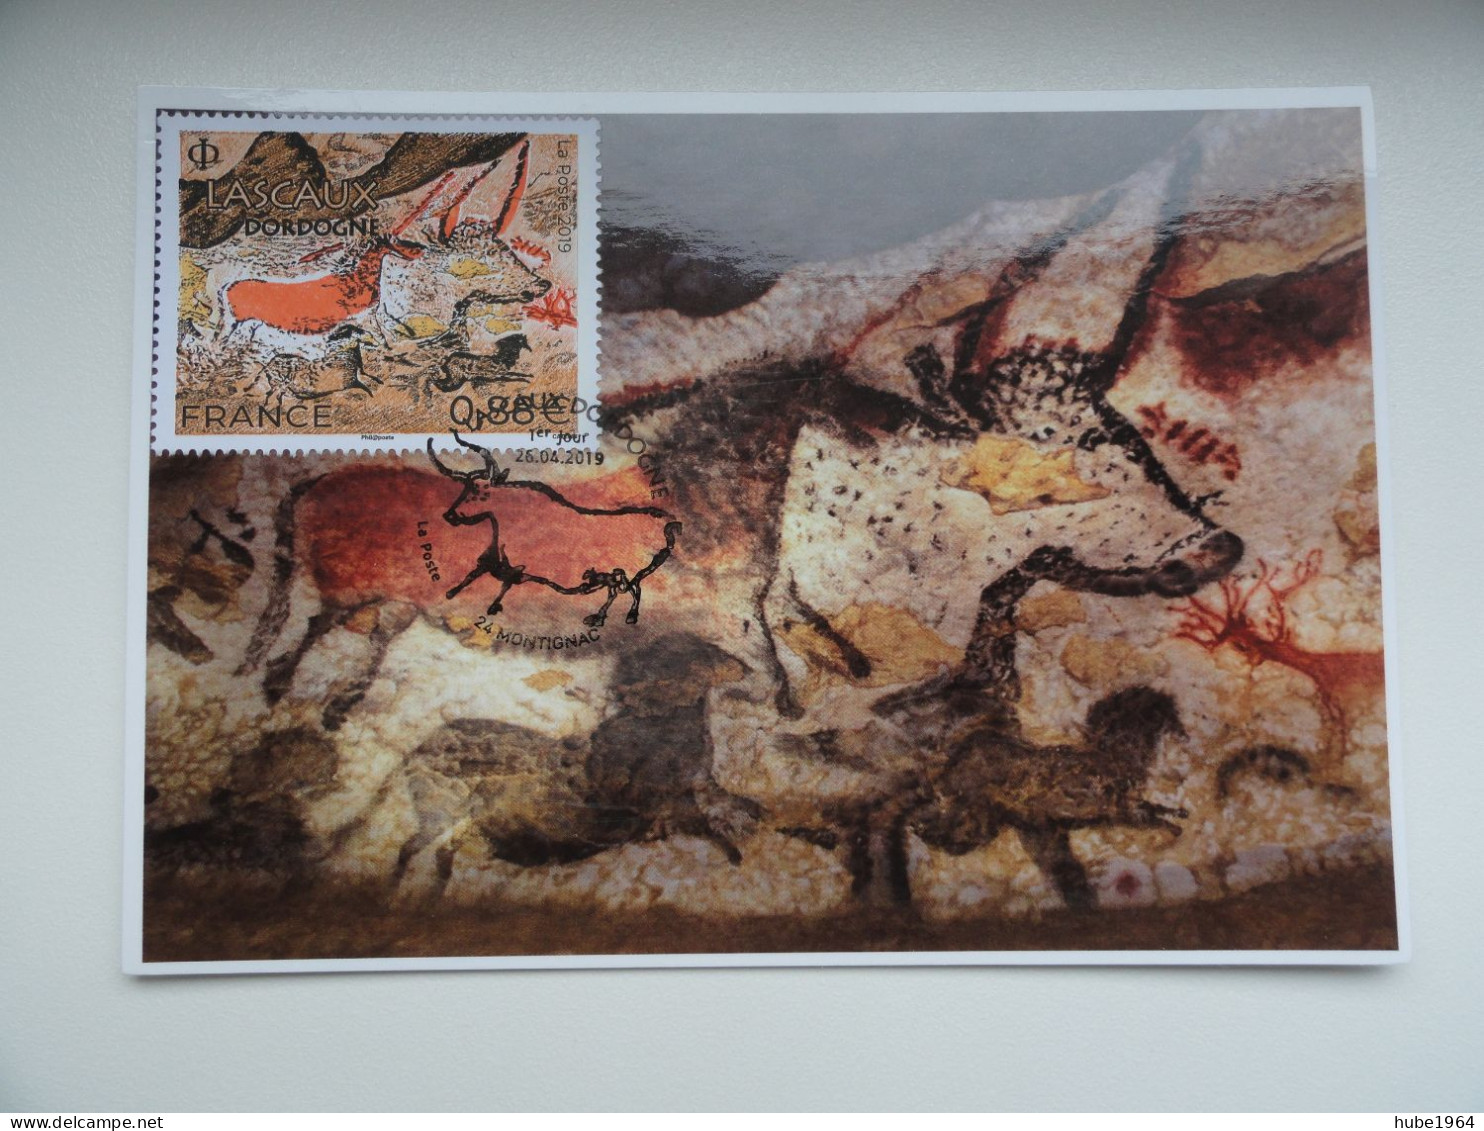 CARTE MAXIMUM CARD GROTTE DE LASCAUX MONTIGNAC DORDOGNE FRANCE - Prehistory